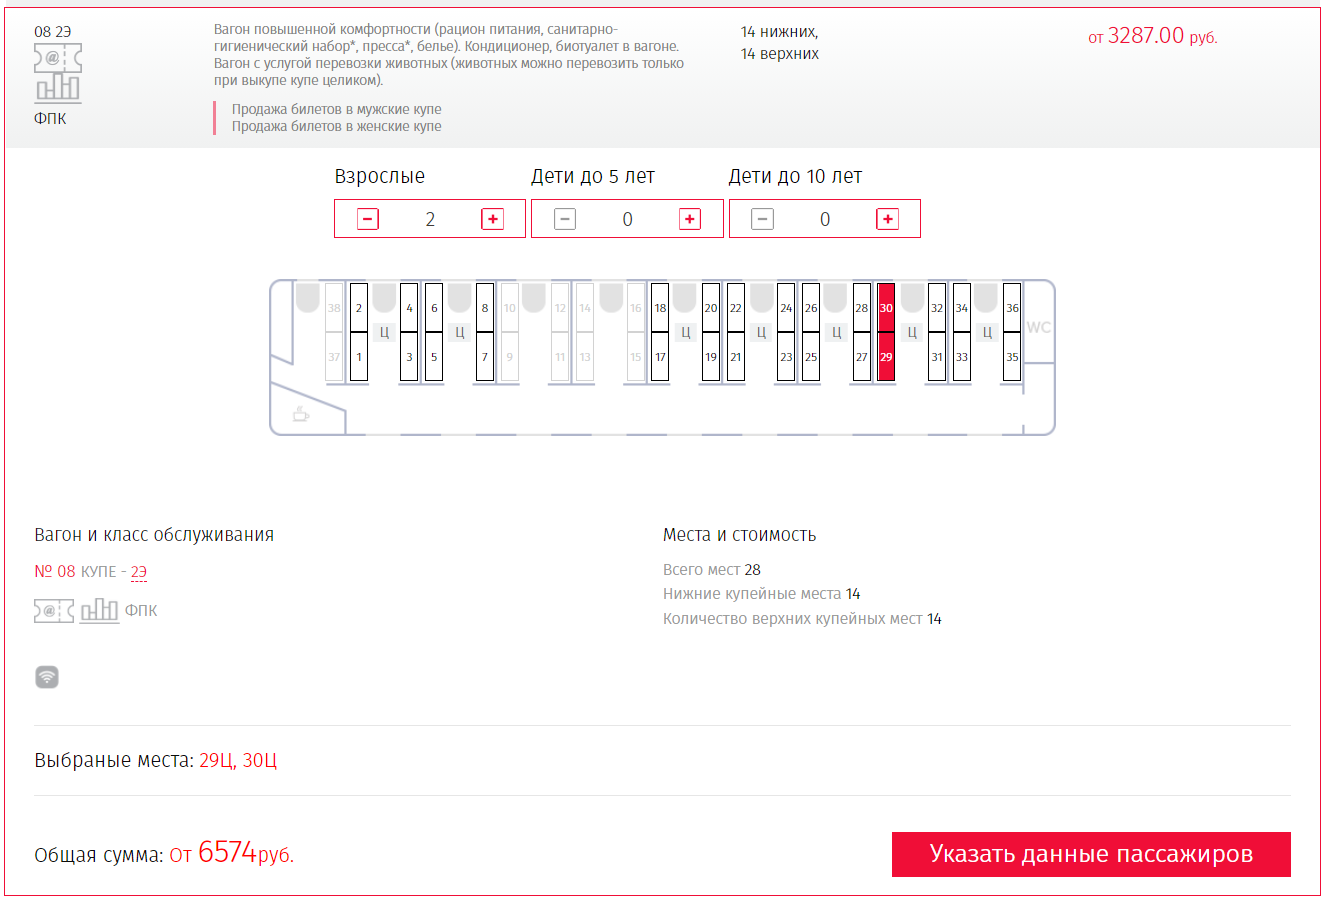 Скриншот предложенной стоимости билетов на поезд на ресурсе ЖД кассы онлайн.